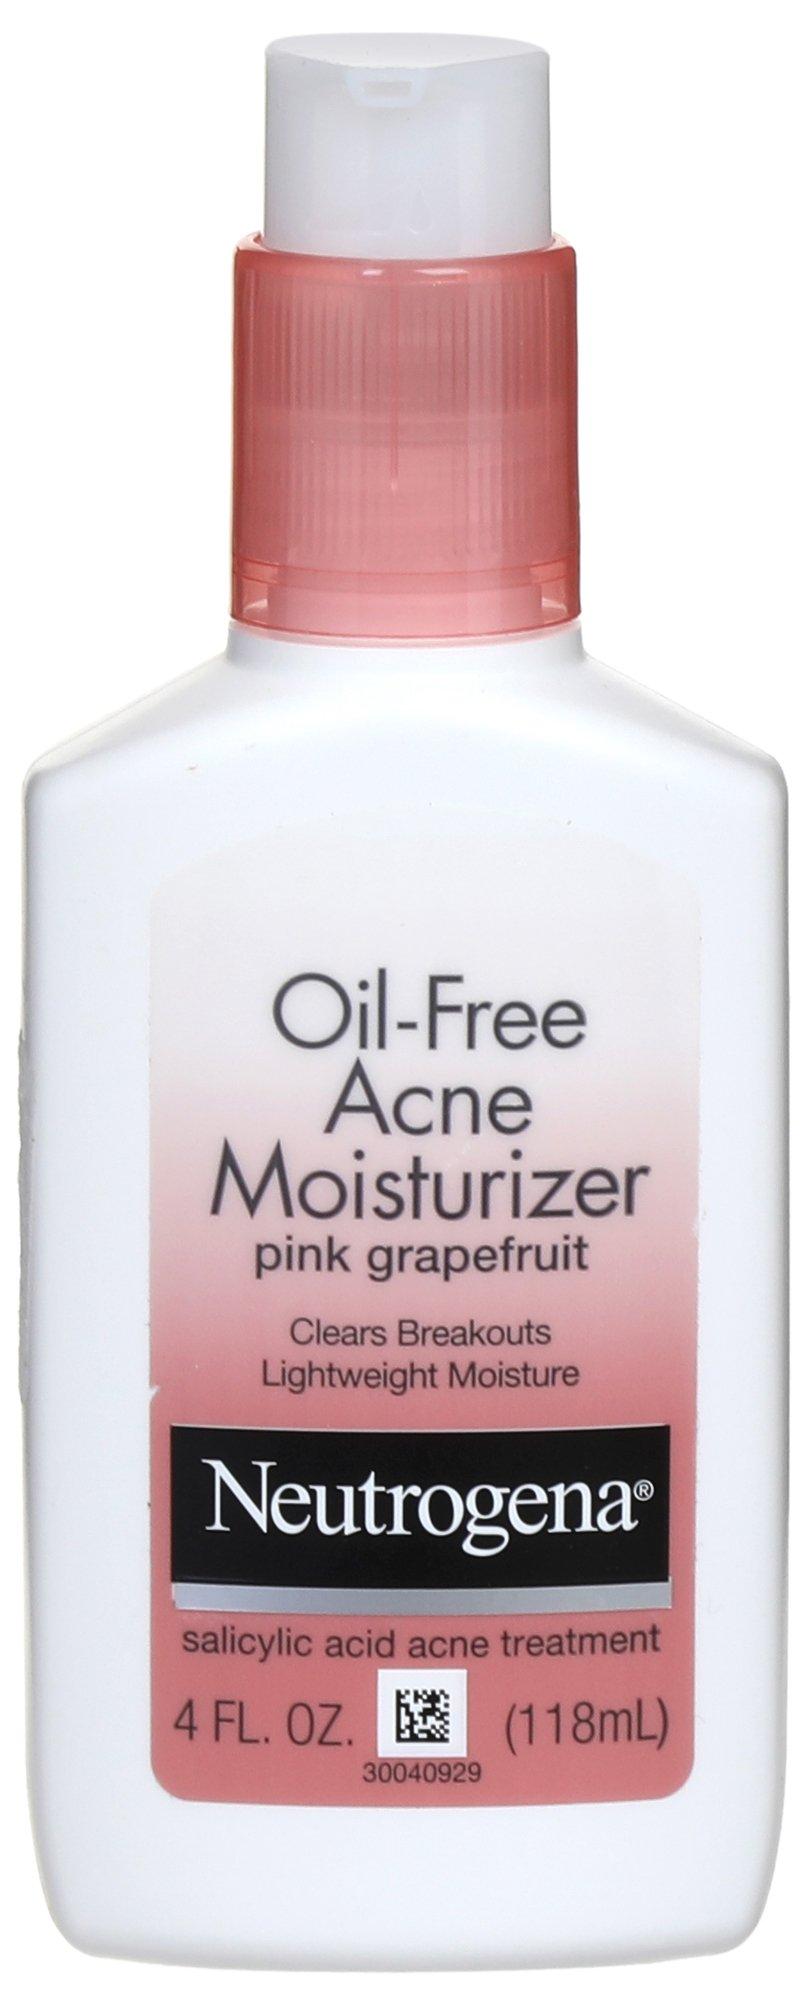 Neutrogena 4 Fl.Oz Pink Grapefruit Oil-Free Acne Moisturizer